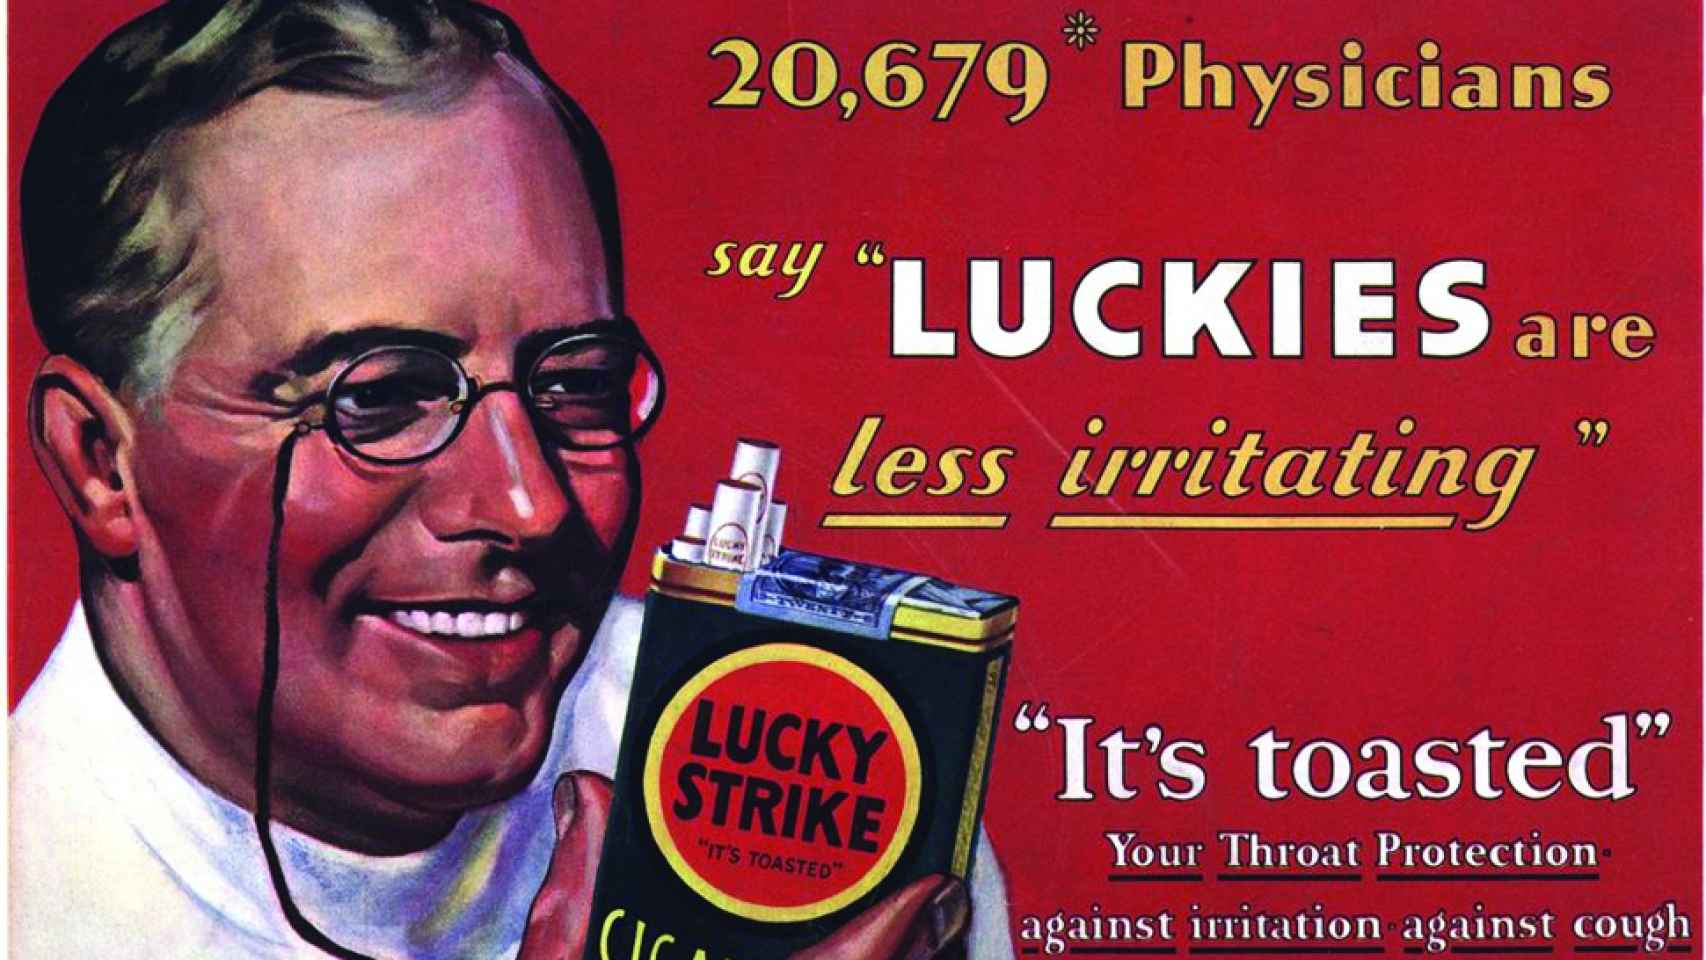 Anuncio clásico de Lucky Strike en el que un médico promovía sus virtudes contra la tos.